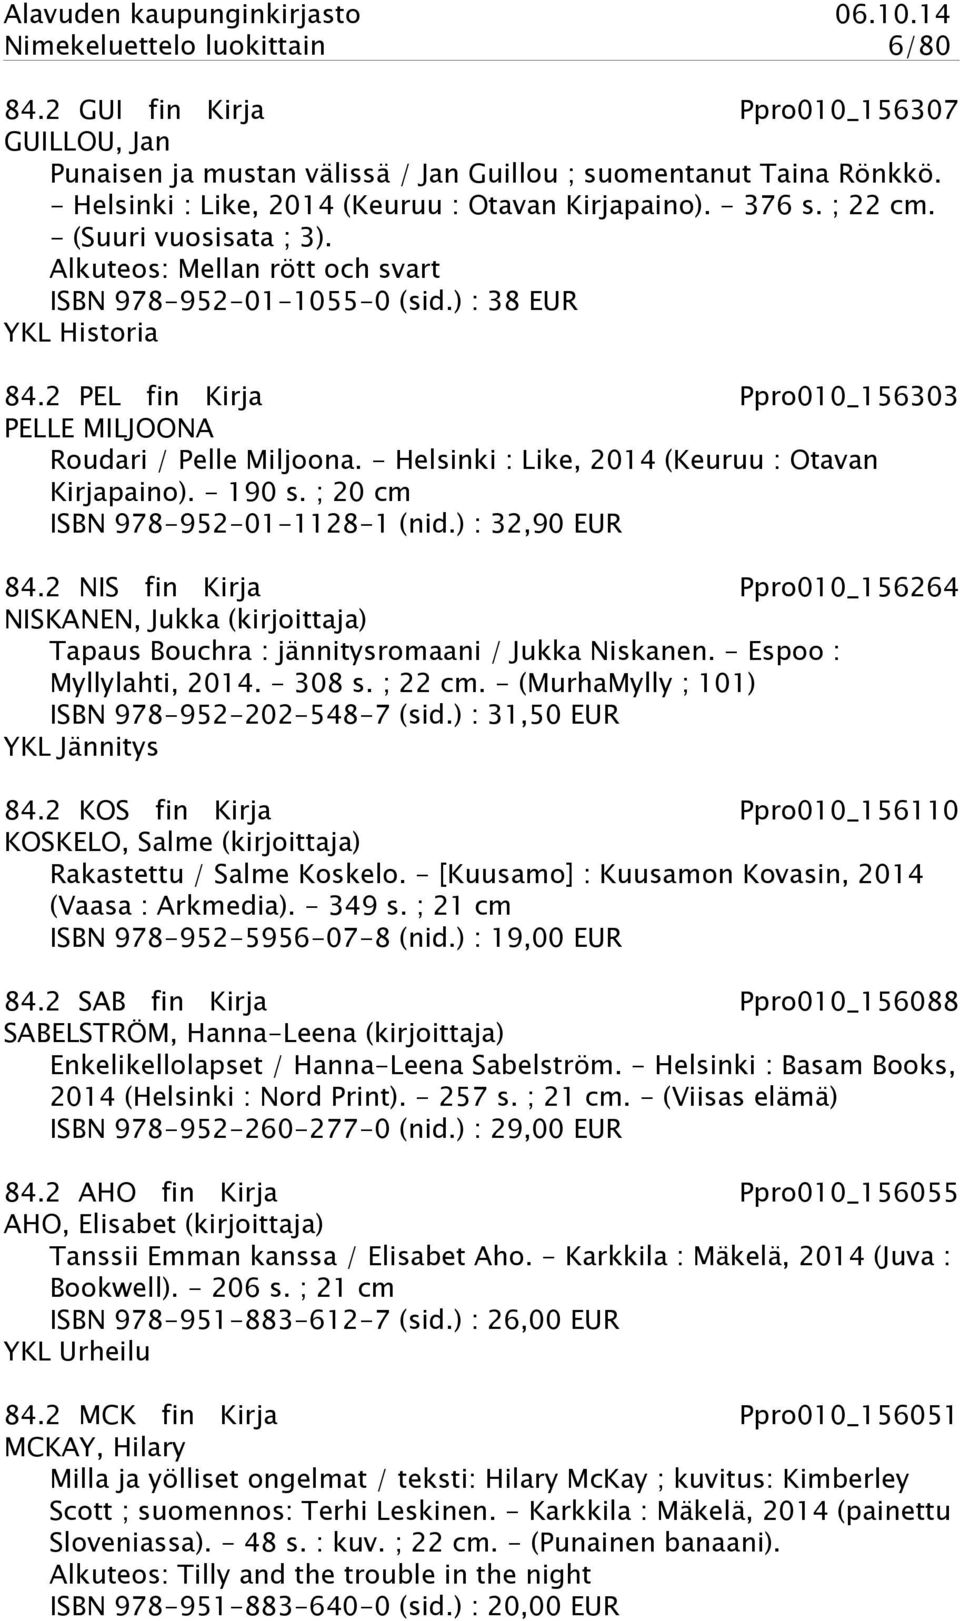 2 PEL fin Kirja Ppro010_156303 PELLE MILJOONA Roudari / Pelle Miljoona. - Helsinki : Like, 2014 (Keuruu : Otavan Kirjapaino). - 190 s. ; 20 cm ISBN 978-952-01-1128-1 (nid.) : 32,90 EUR 84.